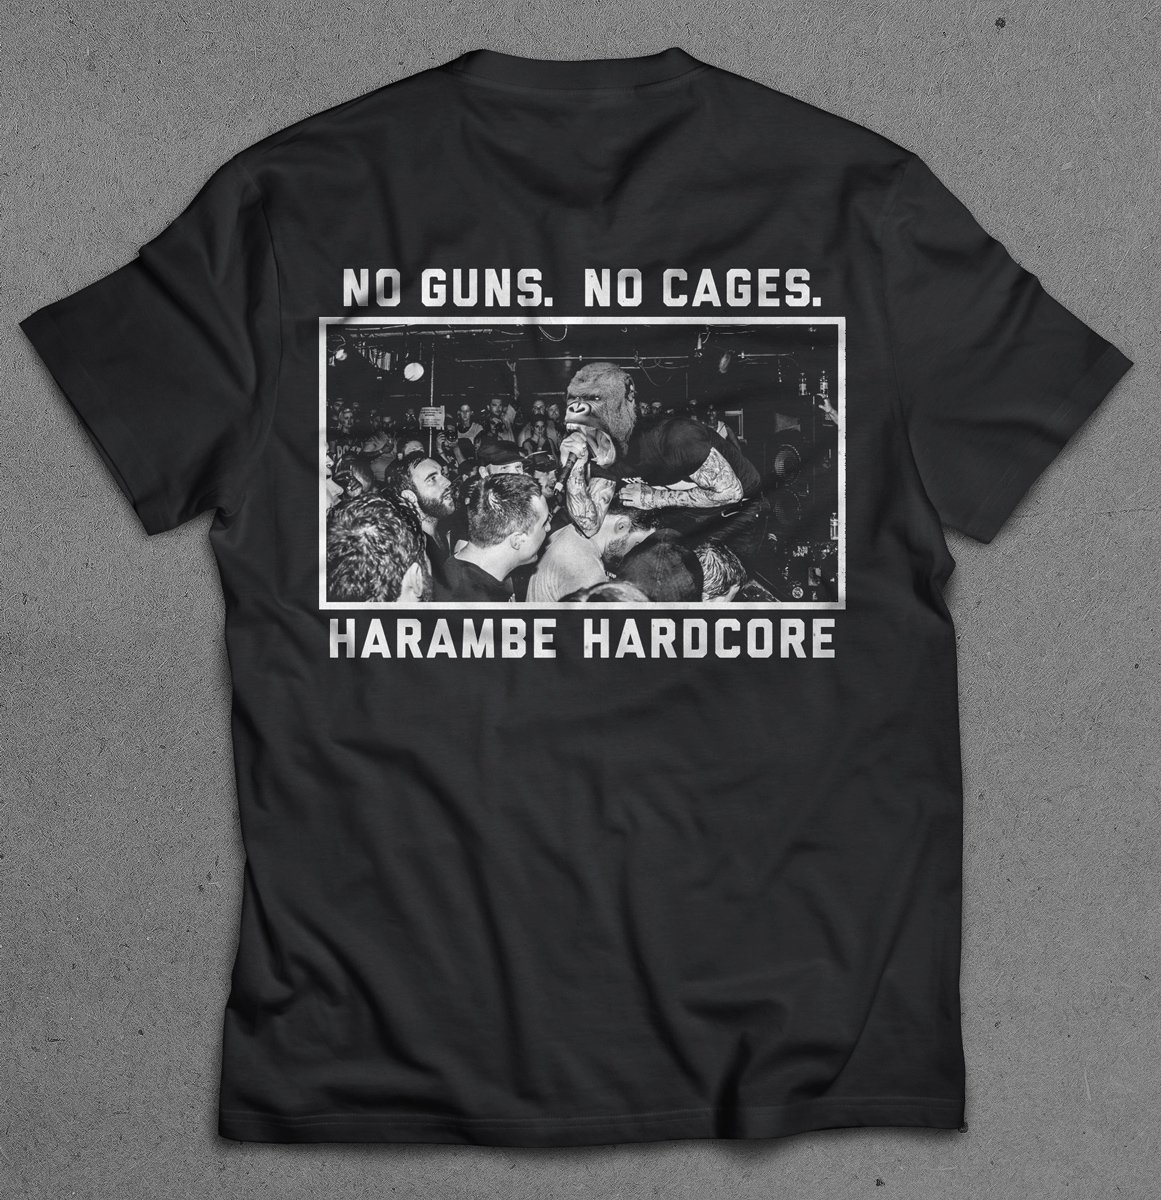 hardcore harambe shirt off 53% - www 